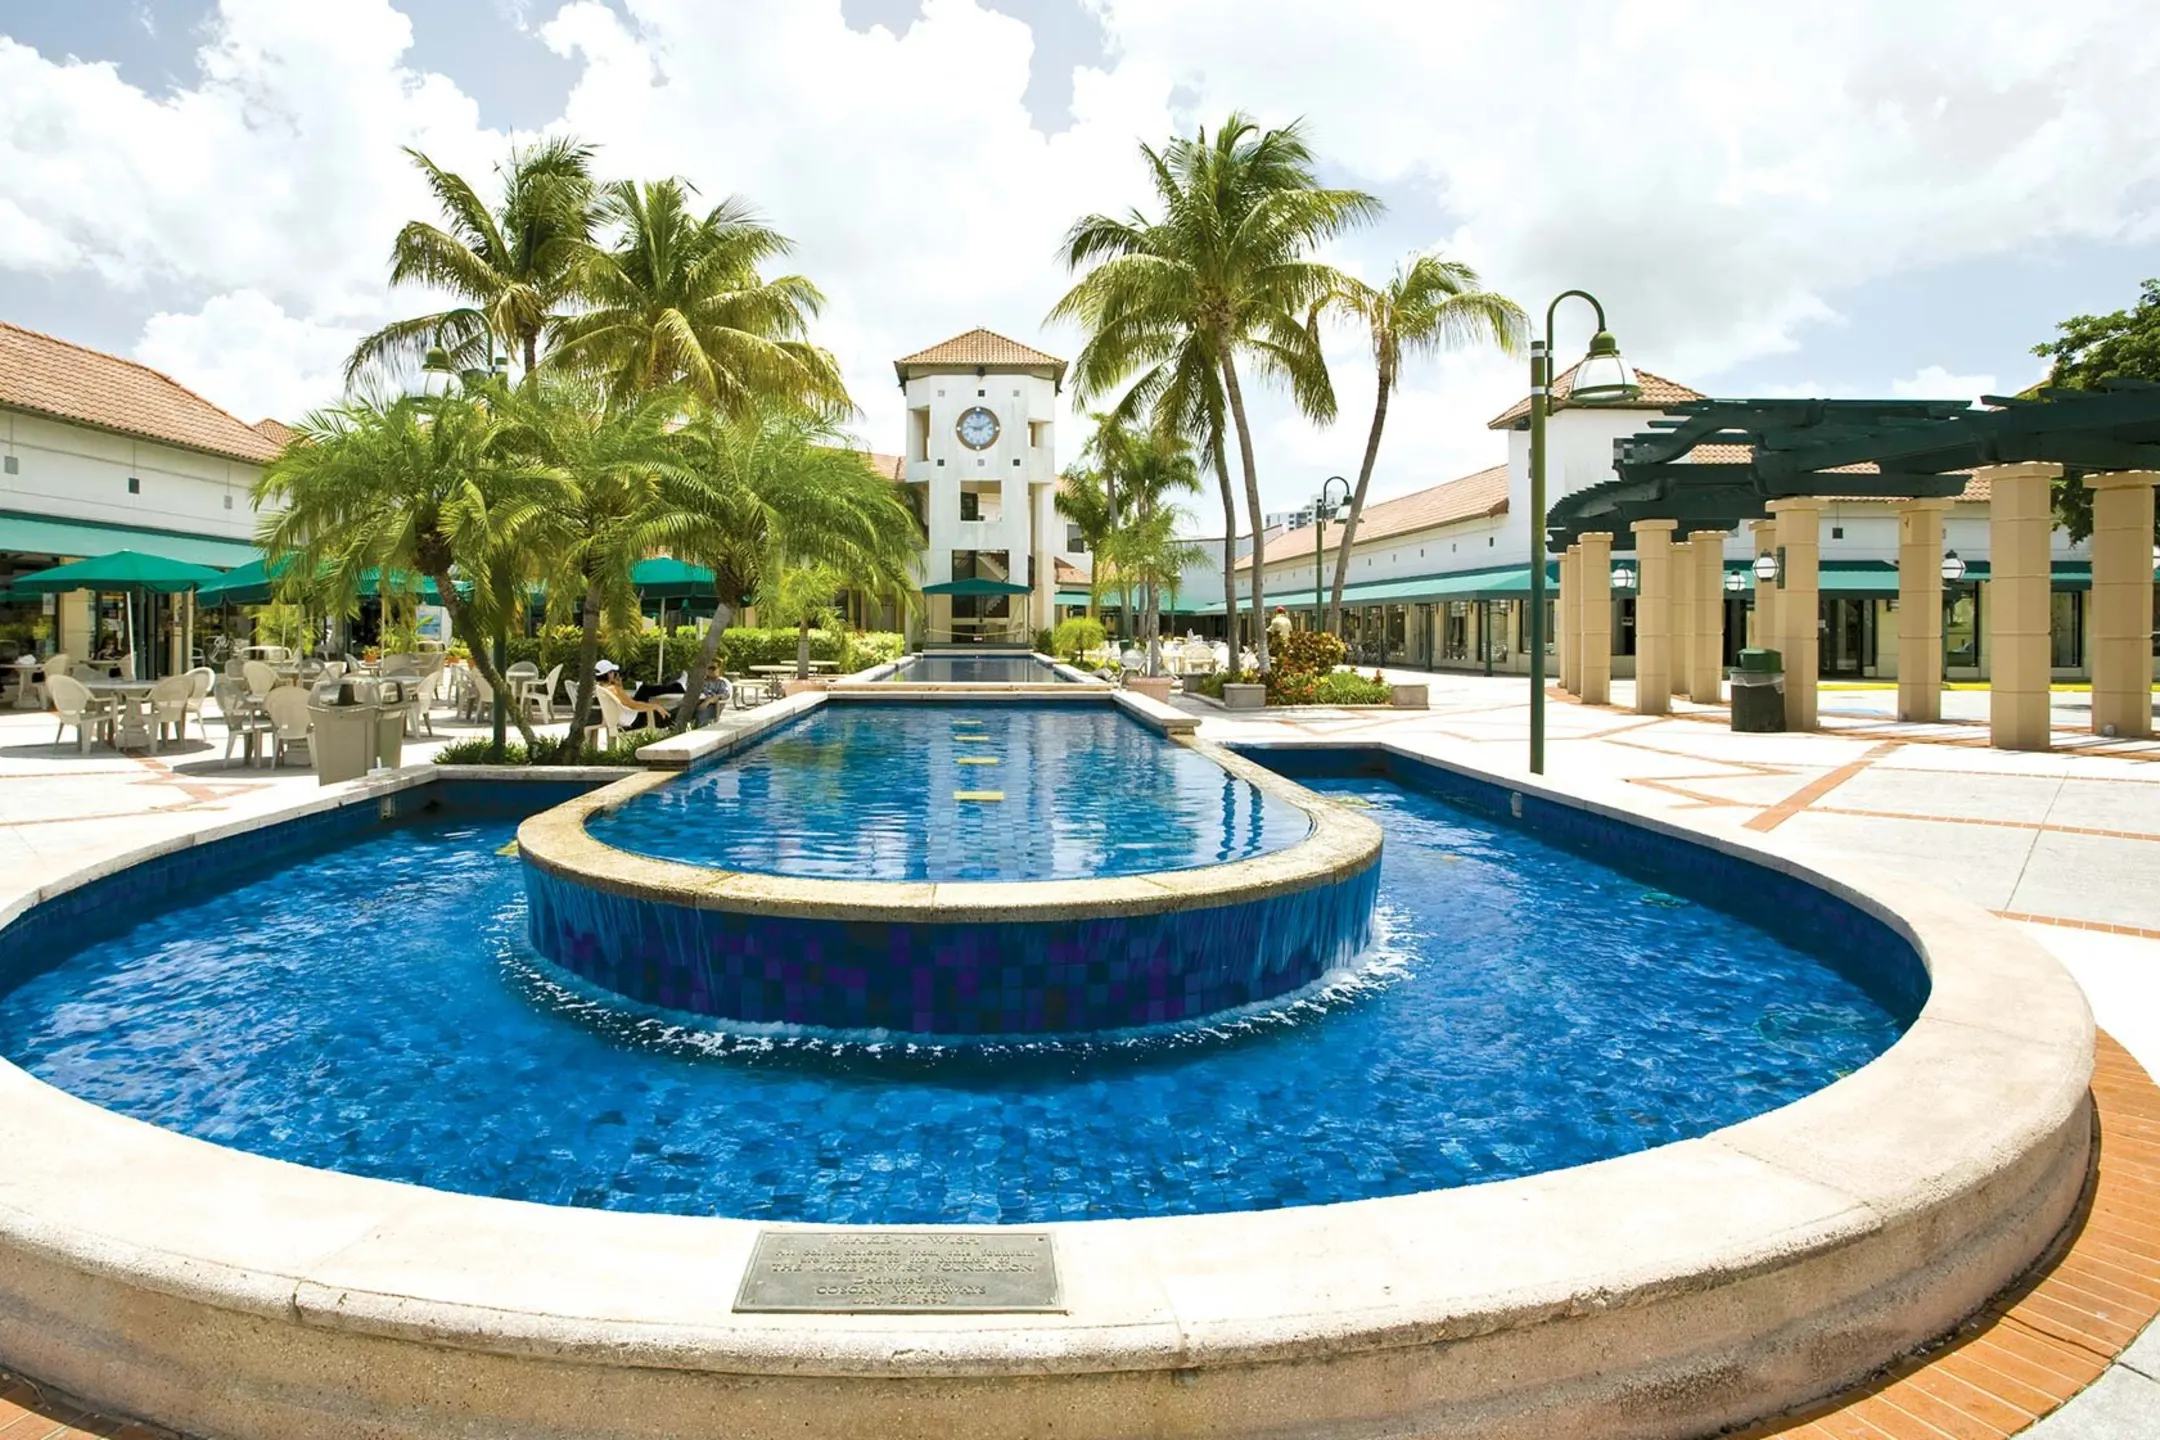 Pool - Waterways Village Apartments - Miami, FL